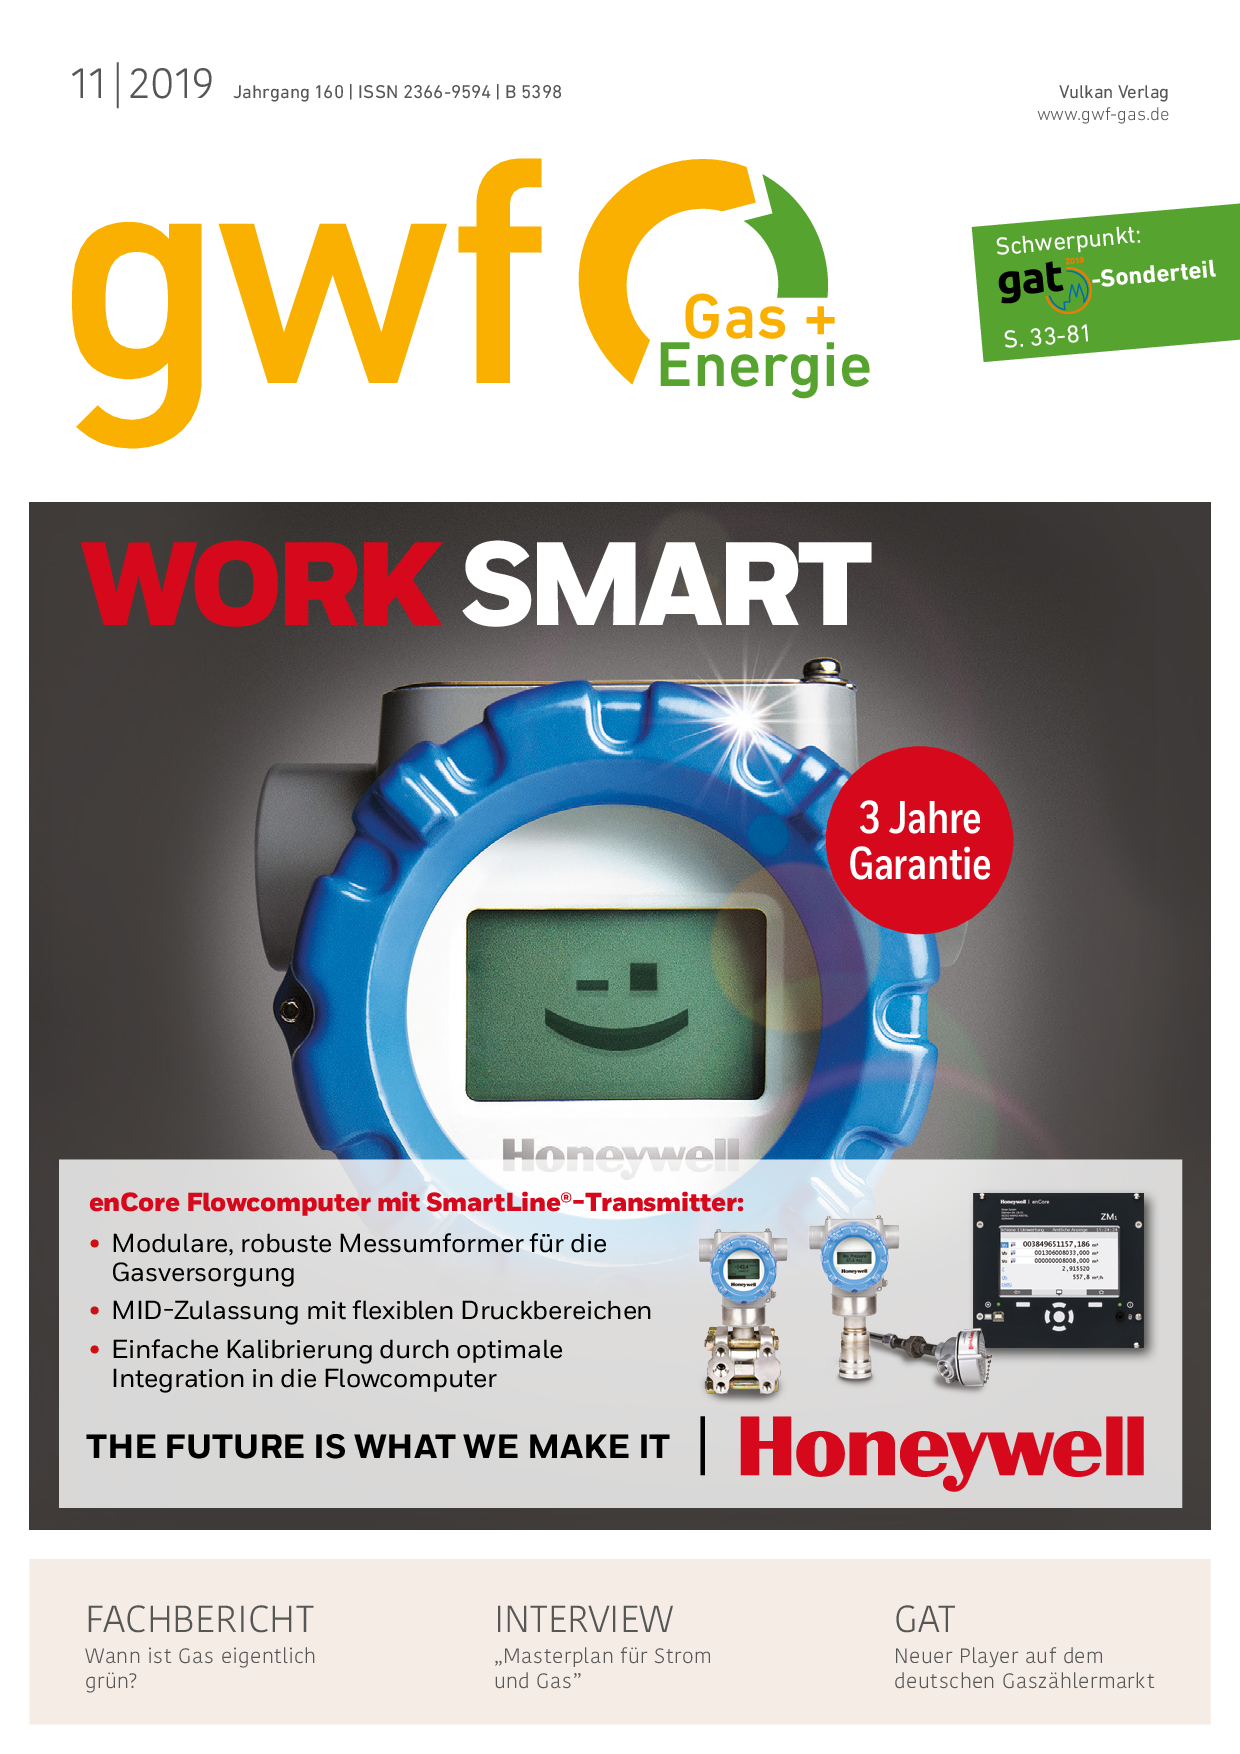 gwf Gas+Energie - 11 2019